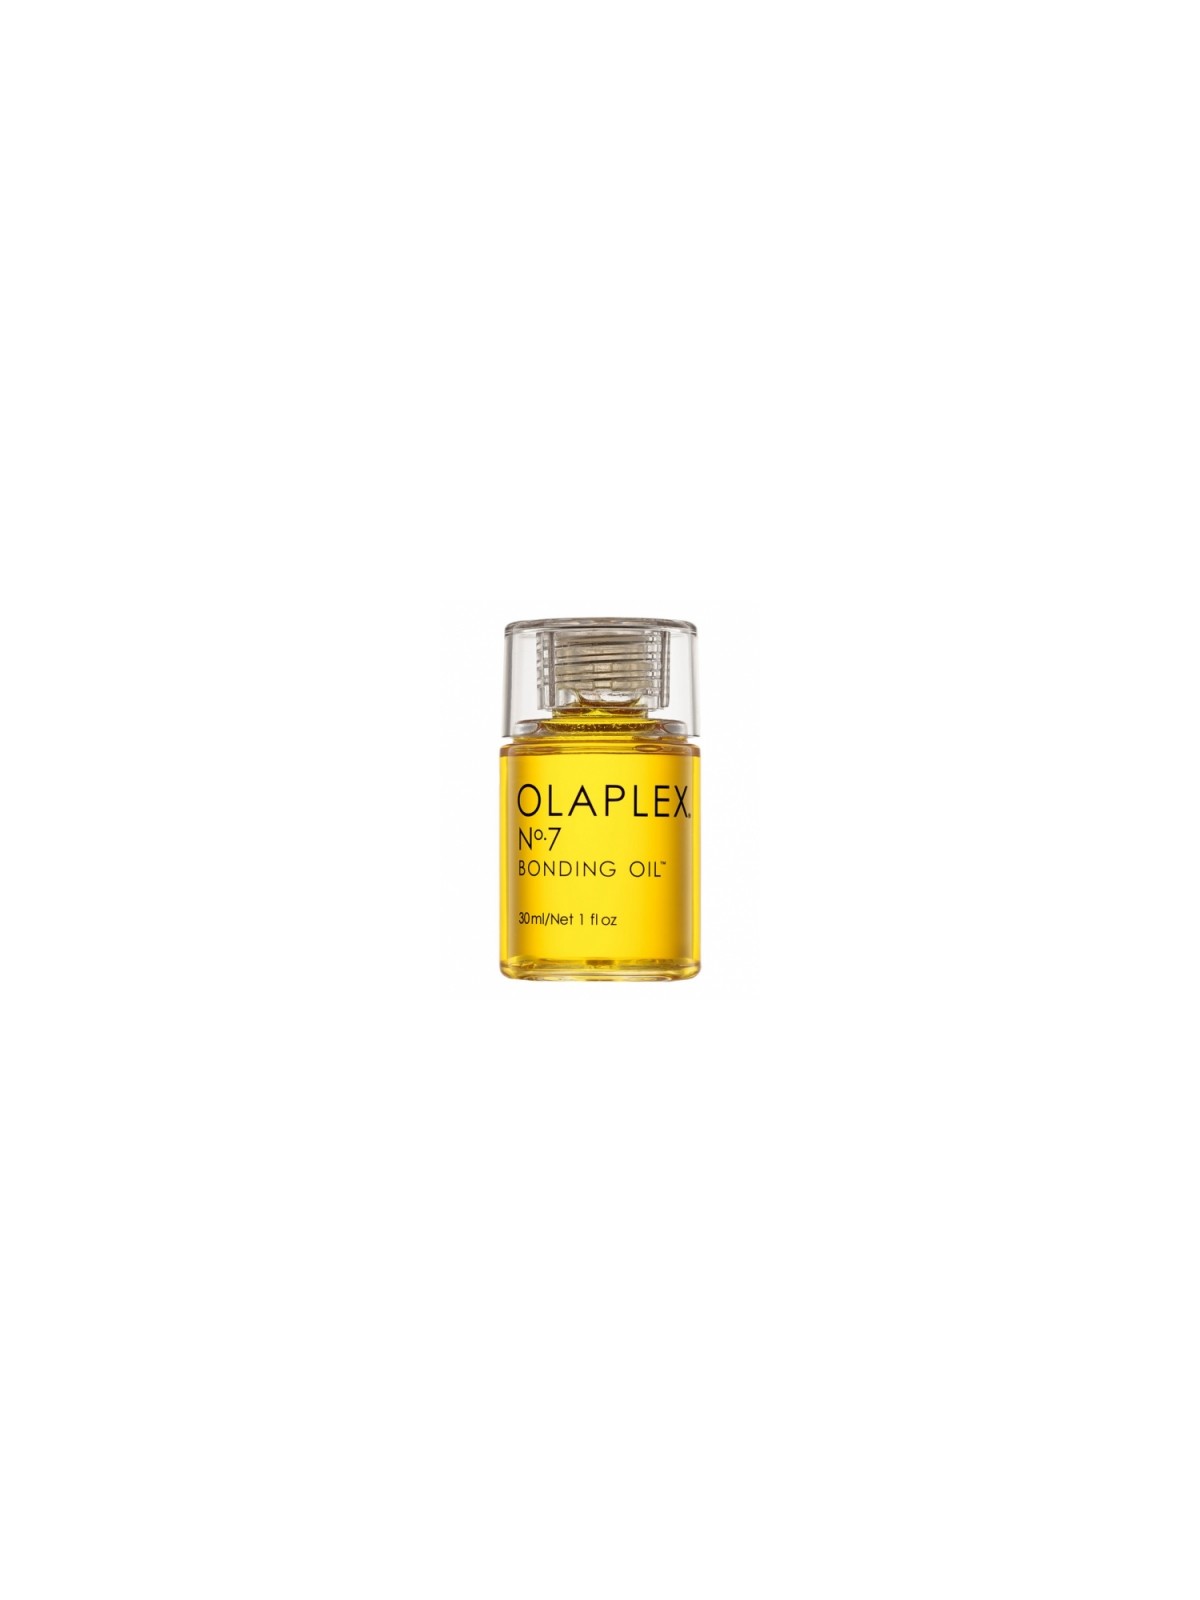 Comprar OLAPLEX Nº7 Bonding Oil | 30ML Aceite Capilar en Serum por sólo 26,50 € o un precio específico de 22,26 € en Thalie Care